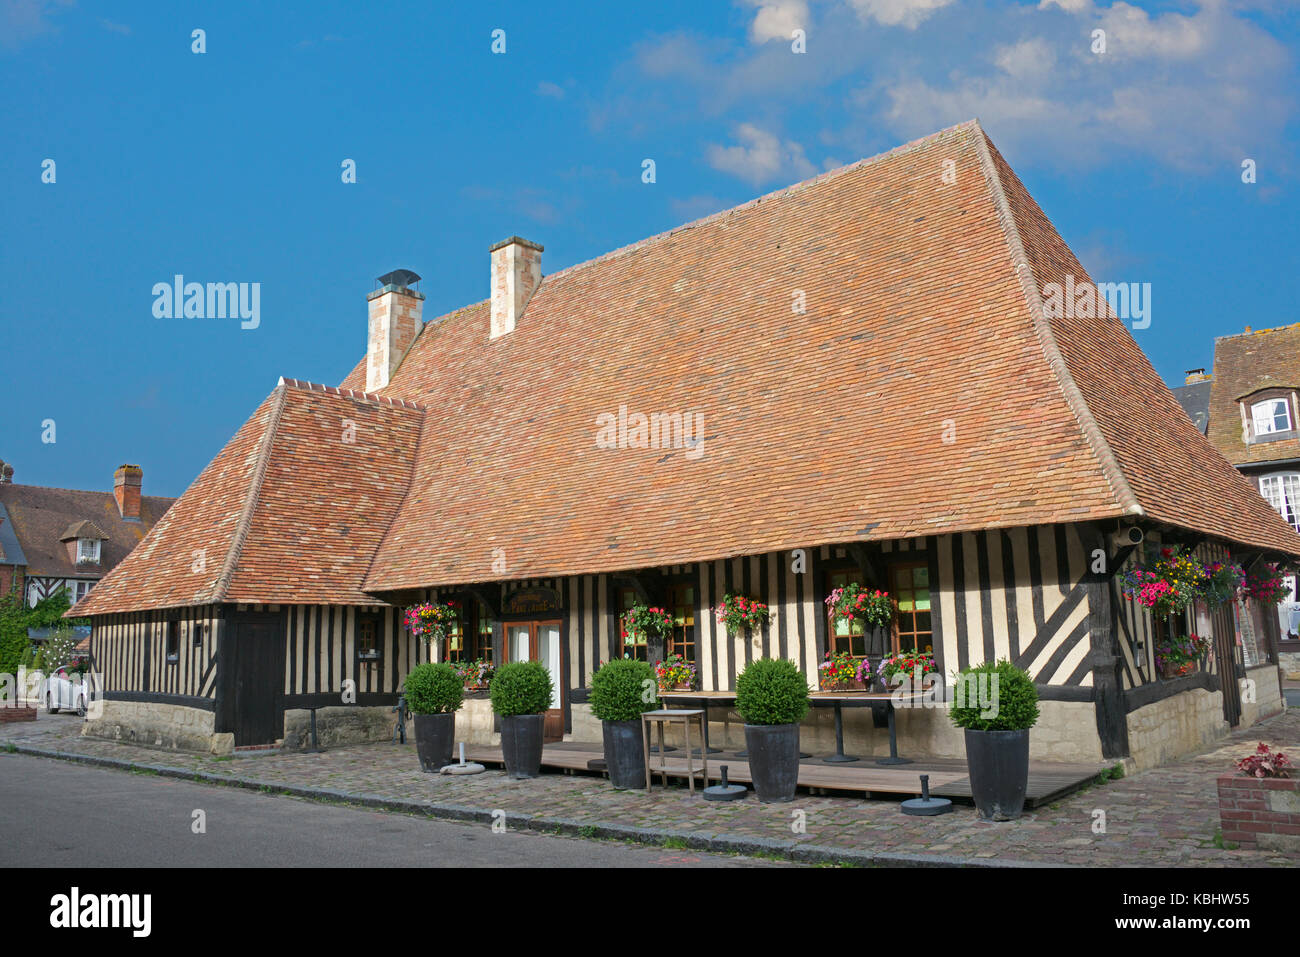 Ancien bâtiment du marché couvert de Beuvron-en-Auge Calvados Normandie France Banque D'Images